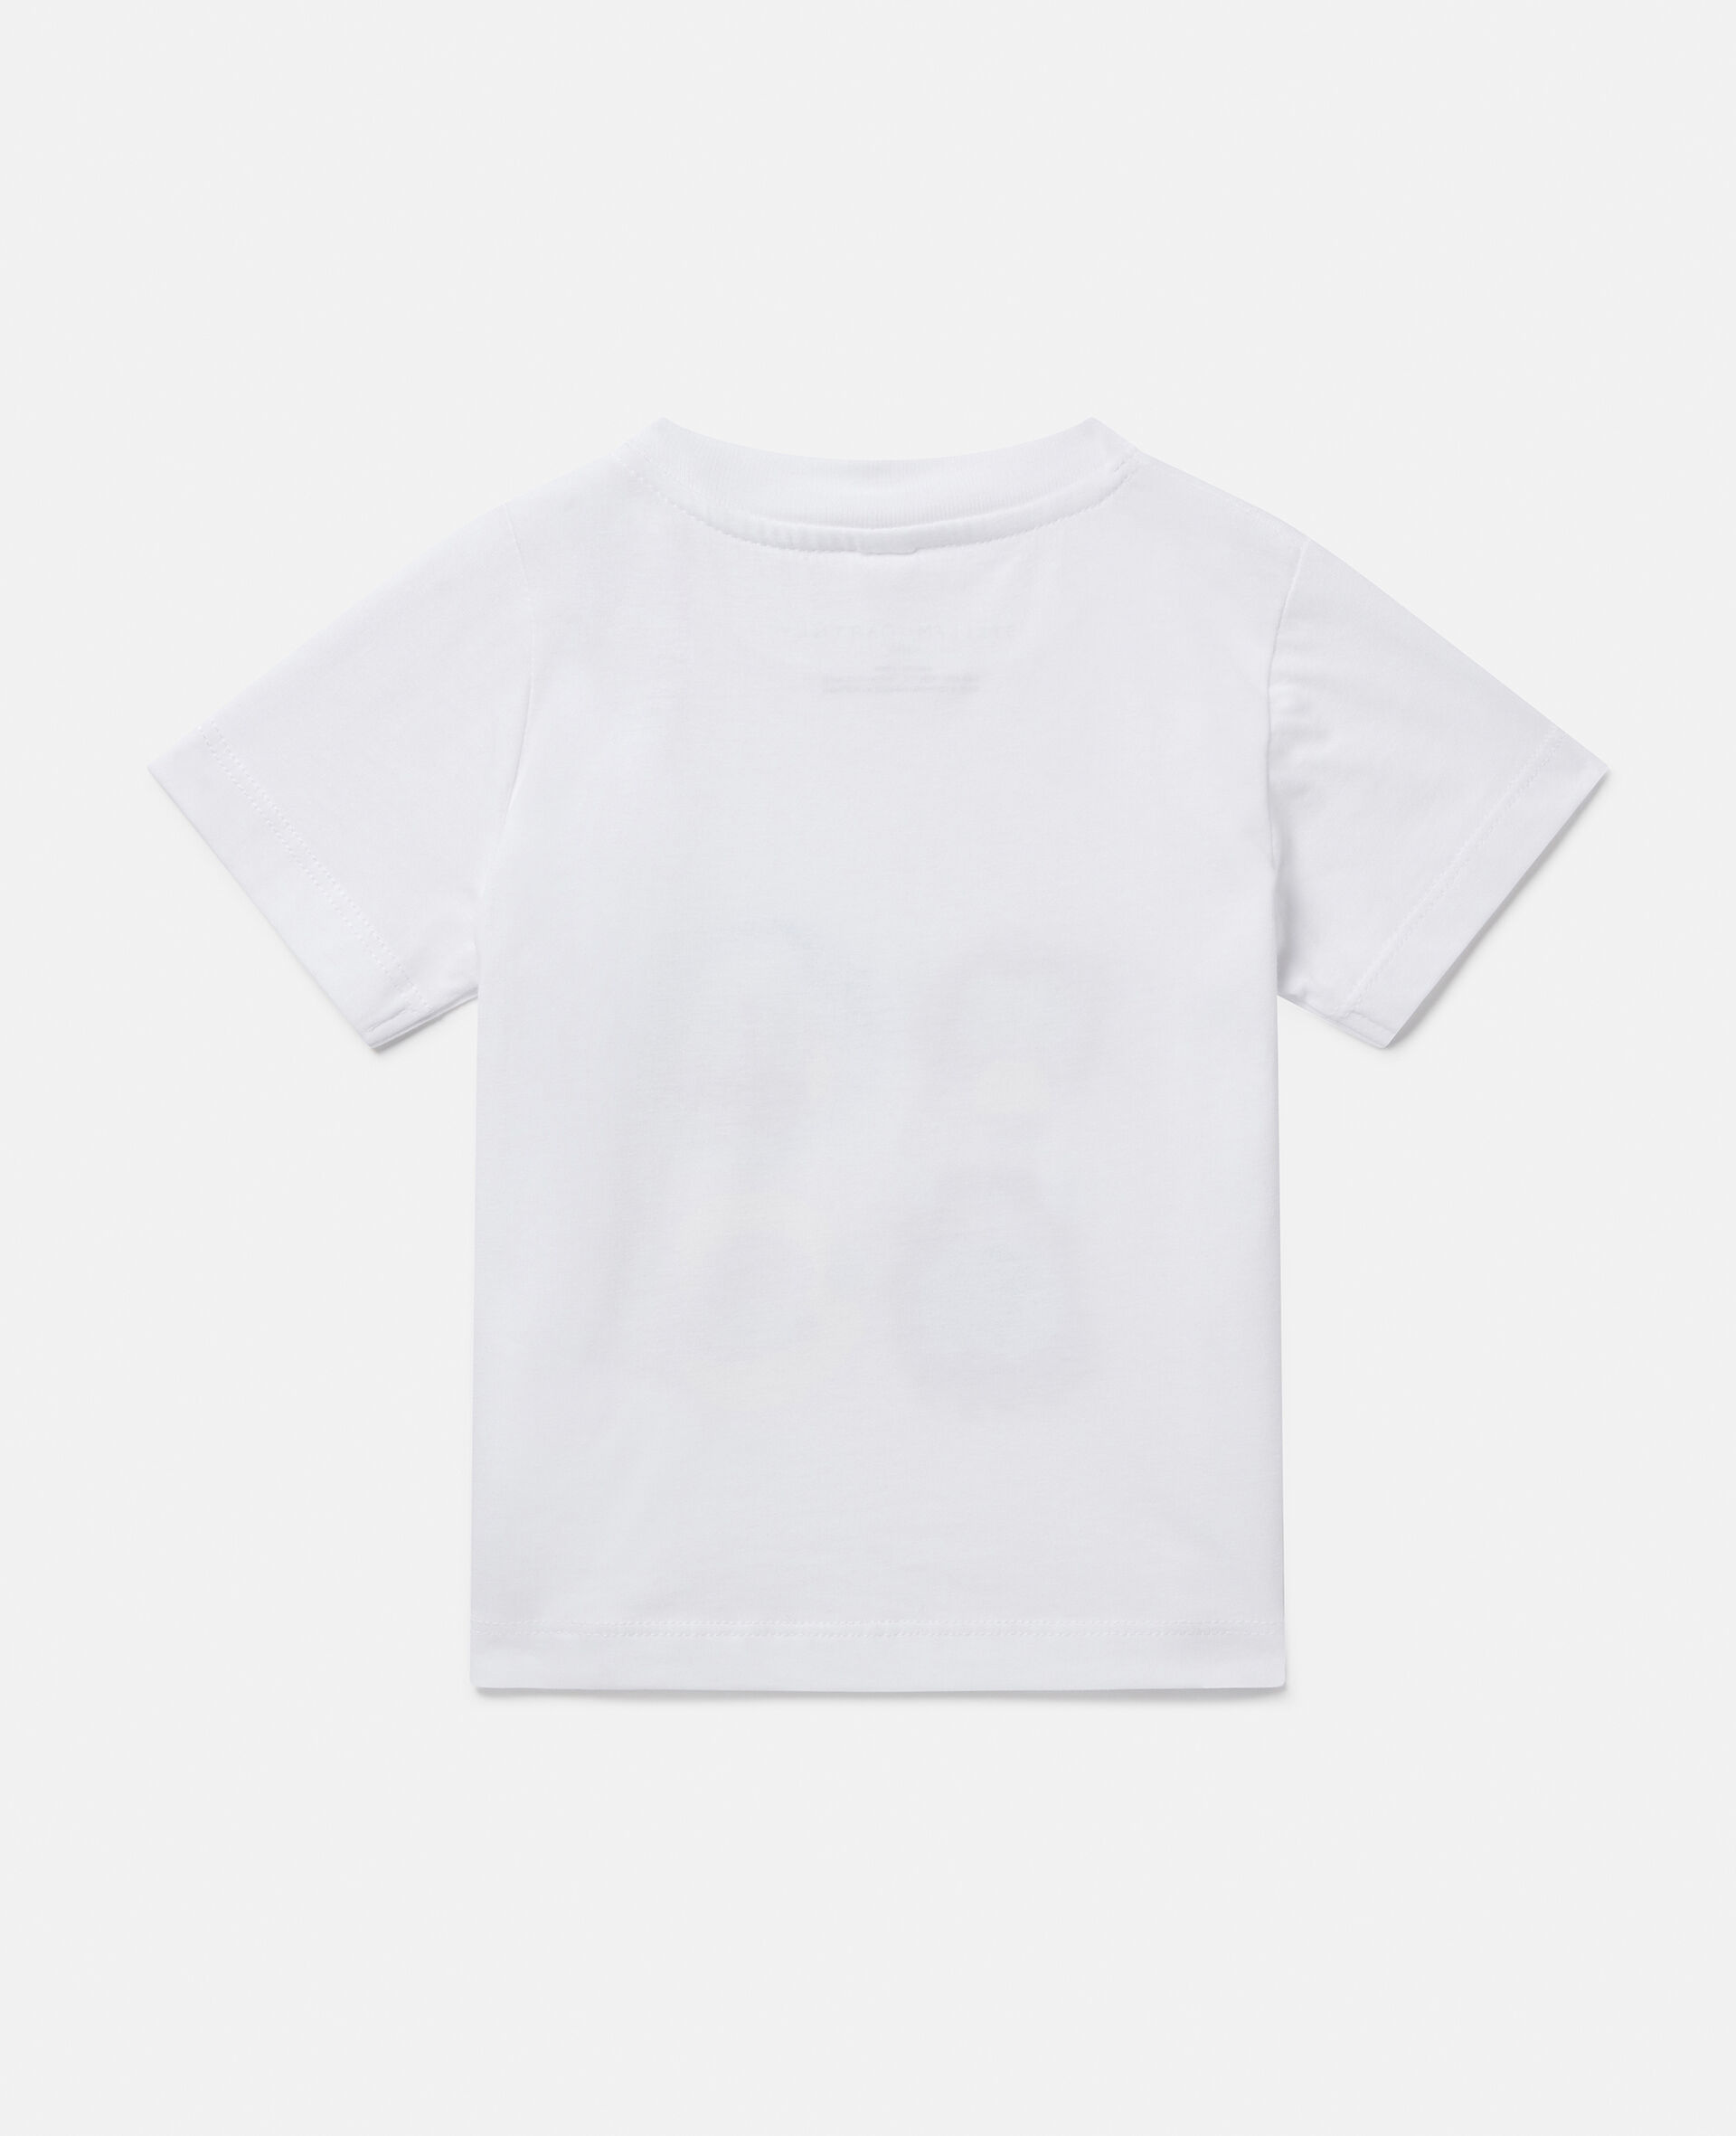 Monkey Family Print T-Shirt-White-large image number 2